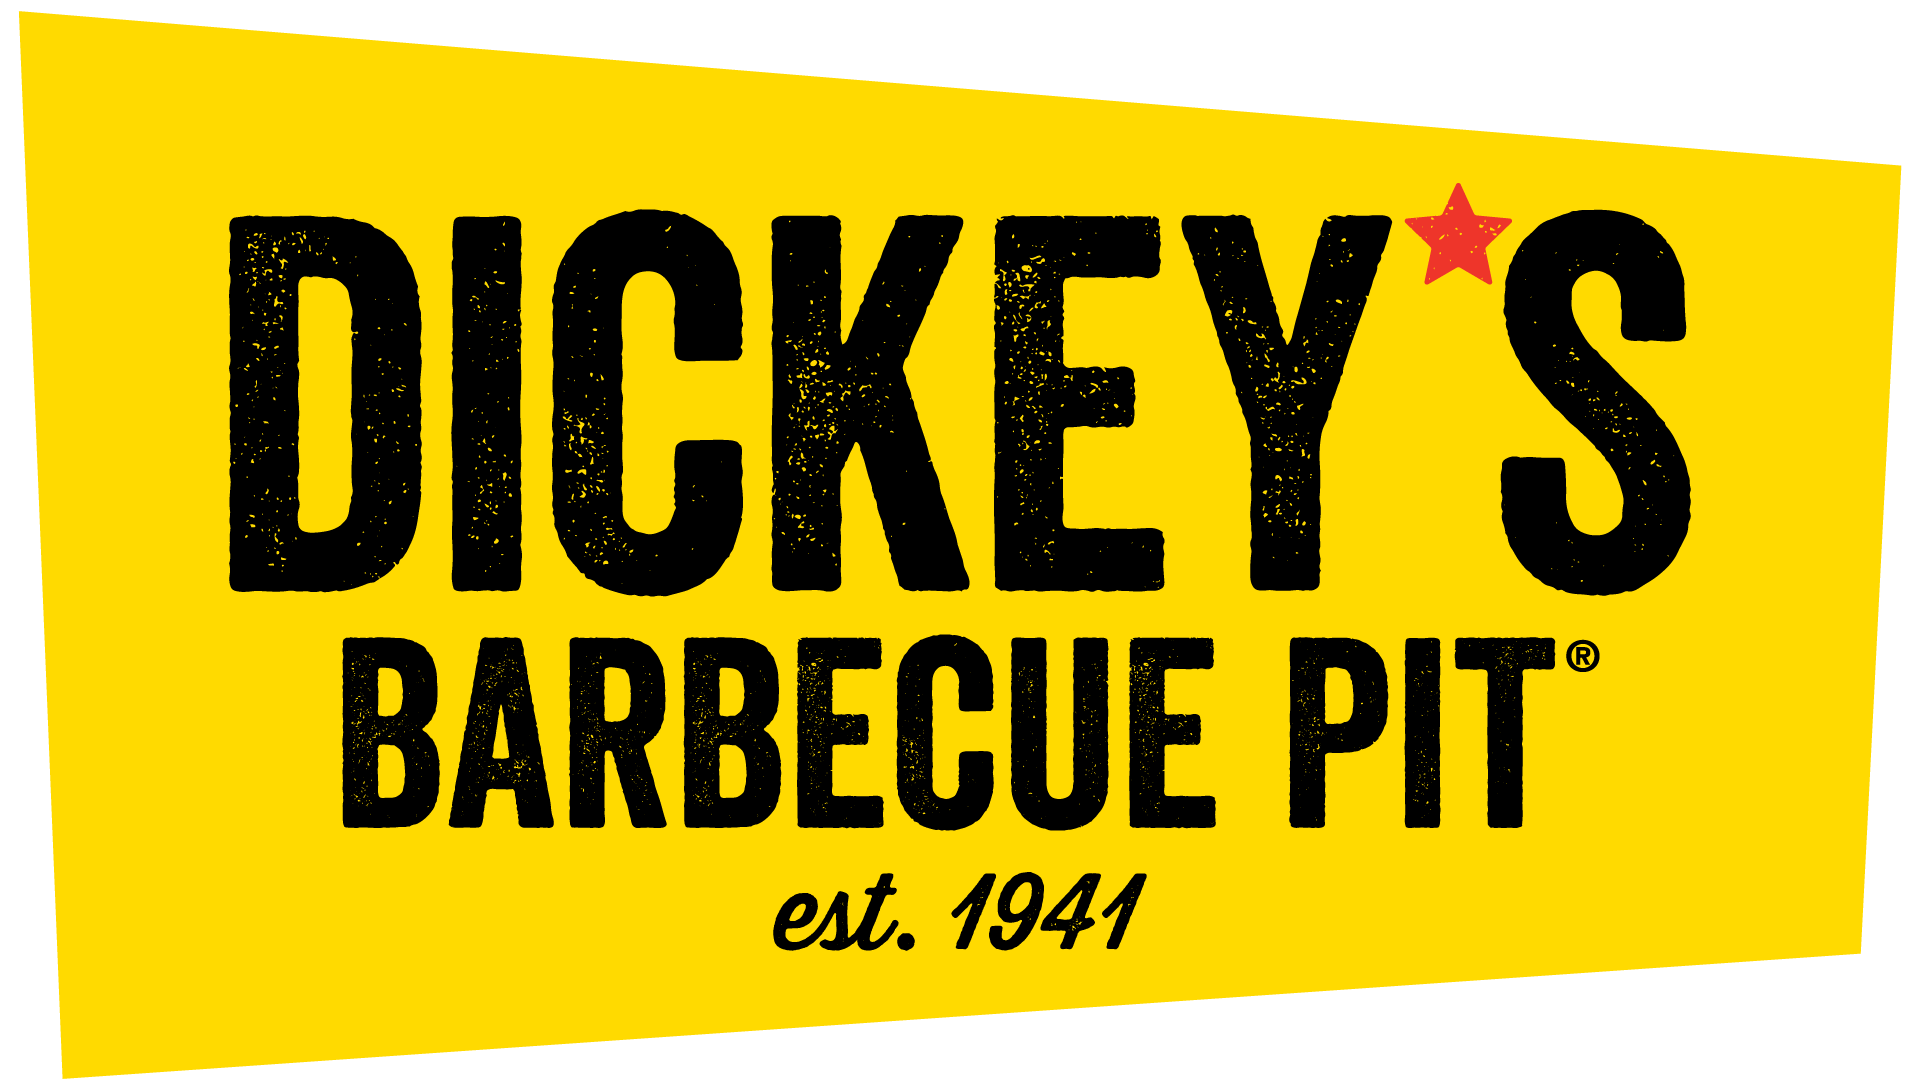 Dickey's Barbecue Pi